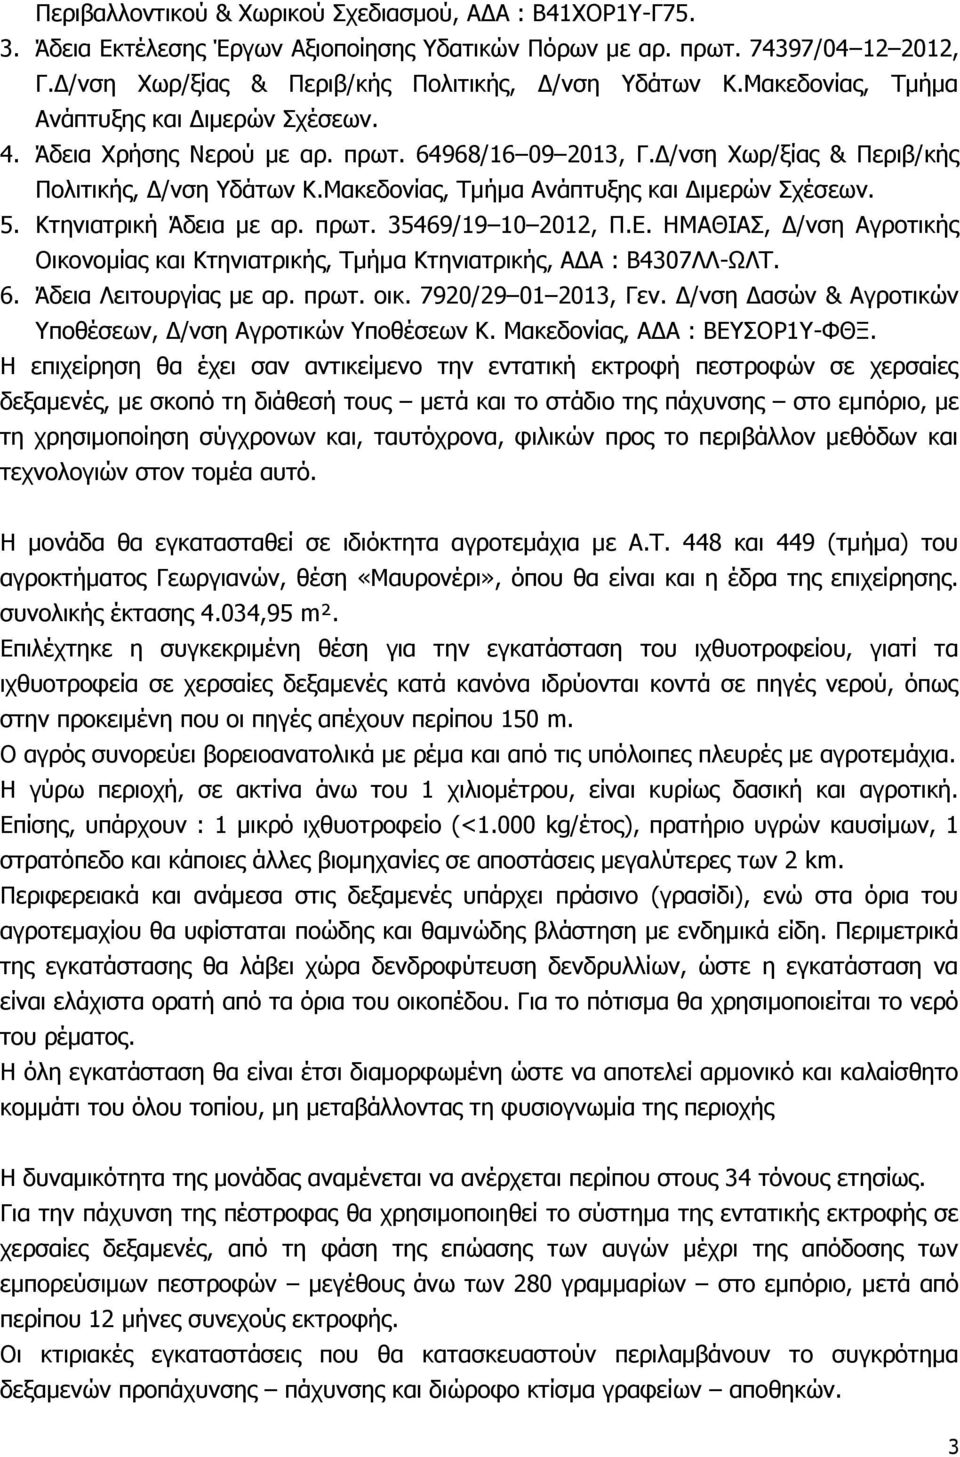 Μακεδονίας, Τμήμα Ανάπτυξης και Διμερών Σχέσεων. 5. Κτηνιατρική Άδεια με αρ. πρωτ. 35469/19 10 2012, Π.Ε. ΗΜΑΘΙΑΣ, Δ/νση Αγροτικής Οικονομίας και Κτηνιατρικής, Τμήμα Κτηνιατρικής, ΑΔΑ : Β4307ΛΛ-ΩΛΤ.